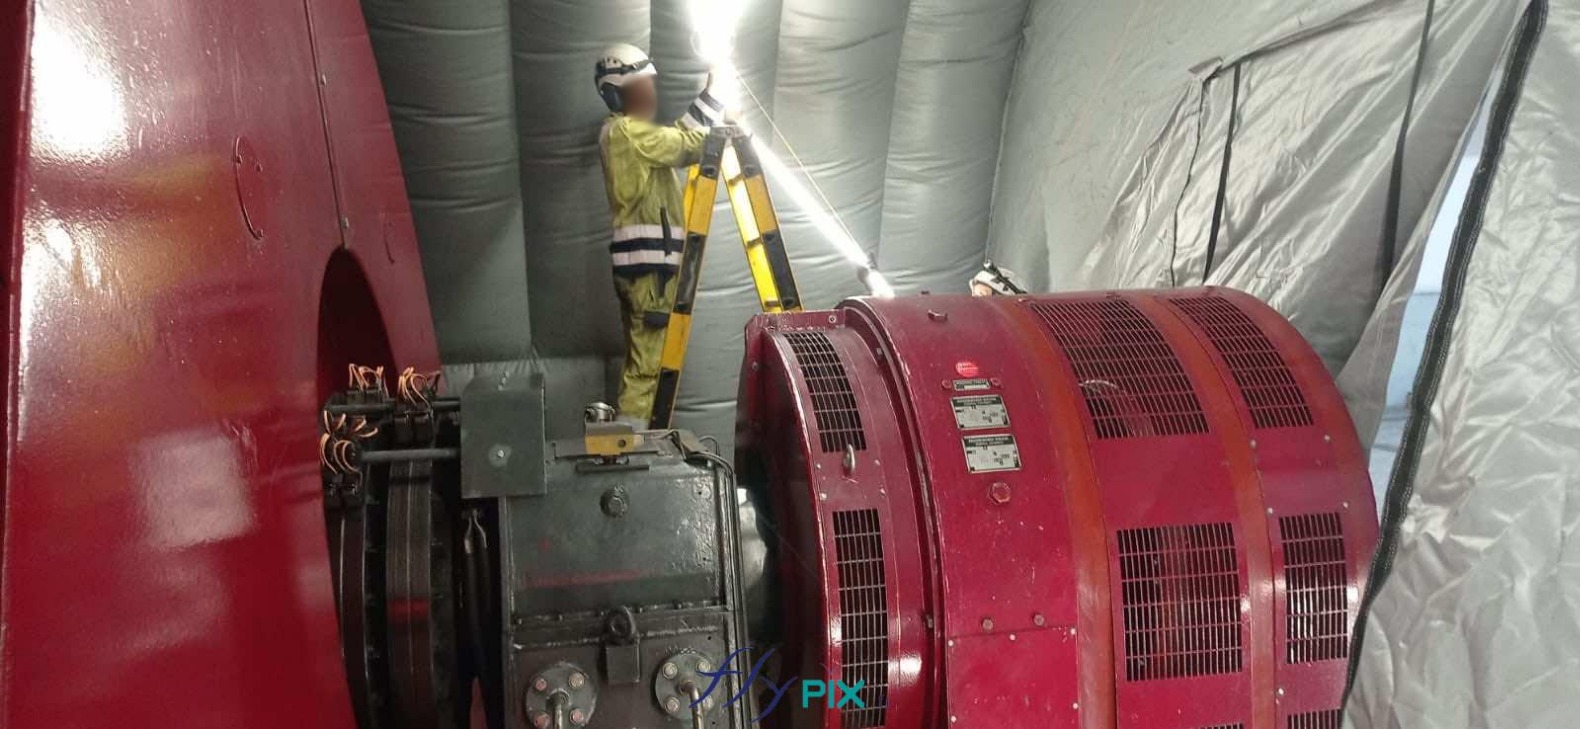 Hydro Exploitation, en Suisse : fabrication sur mesure d'une tente gonflable industrielle en forme de tunnel, enveloppe PVC 0.45 mm double peau capitonnée, ventilée par turbine en permanence.